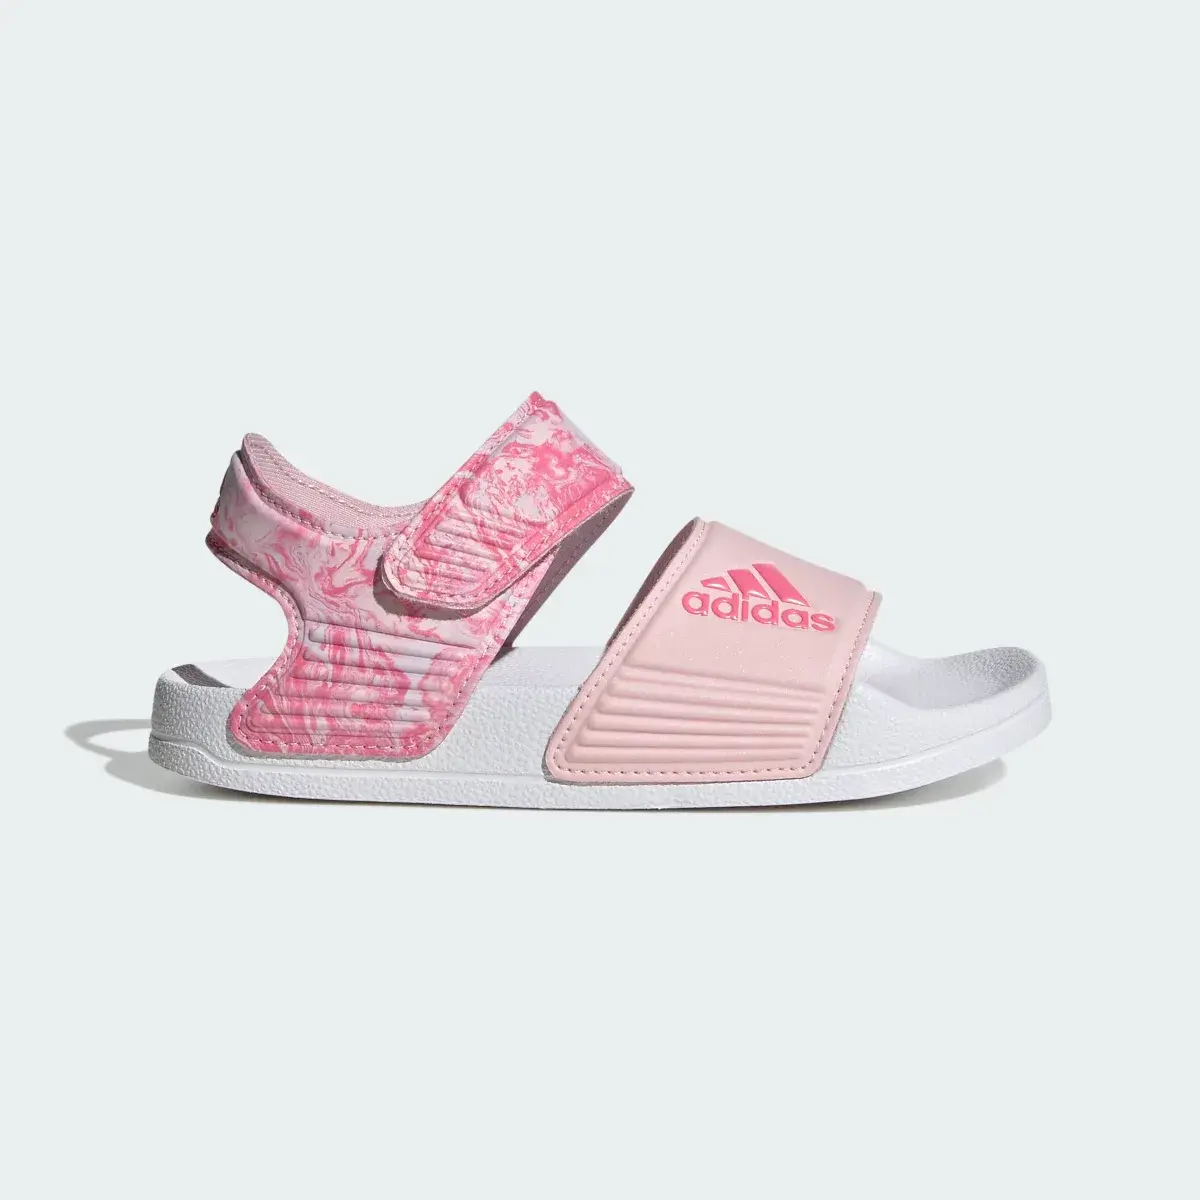 Adidas Adilette Sandals. 2